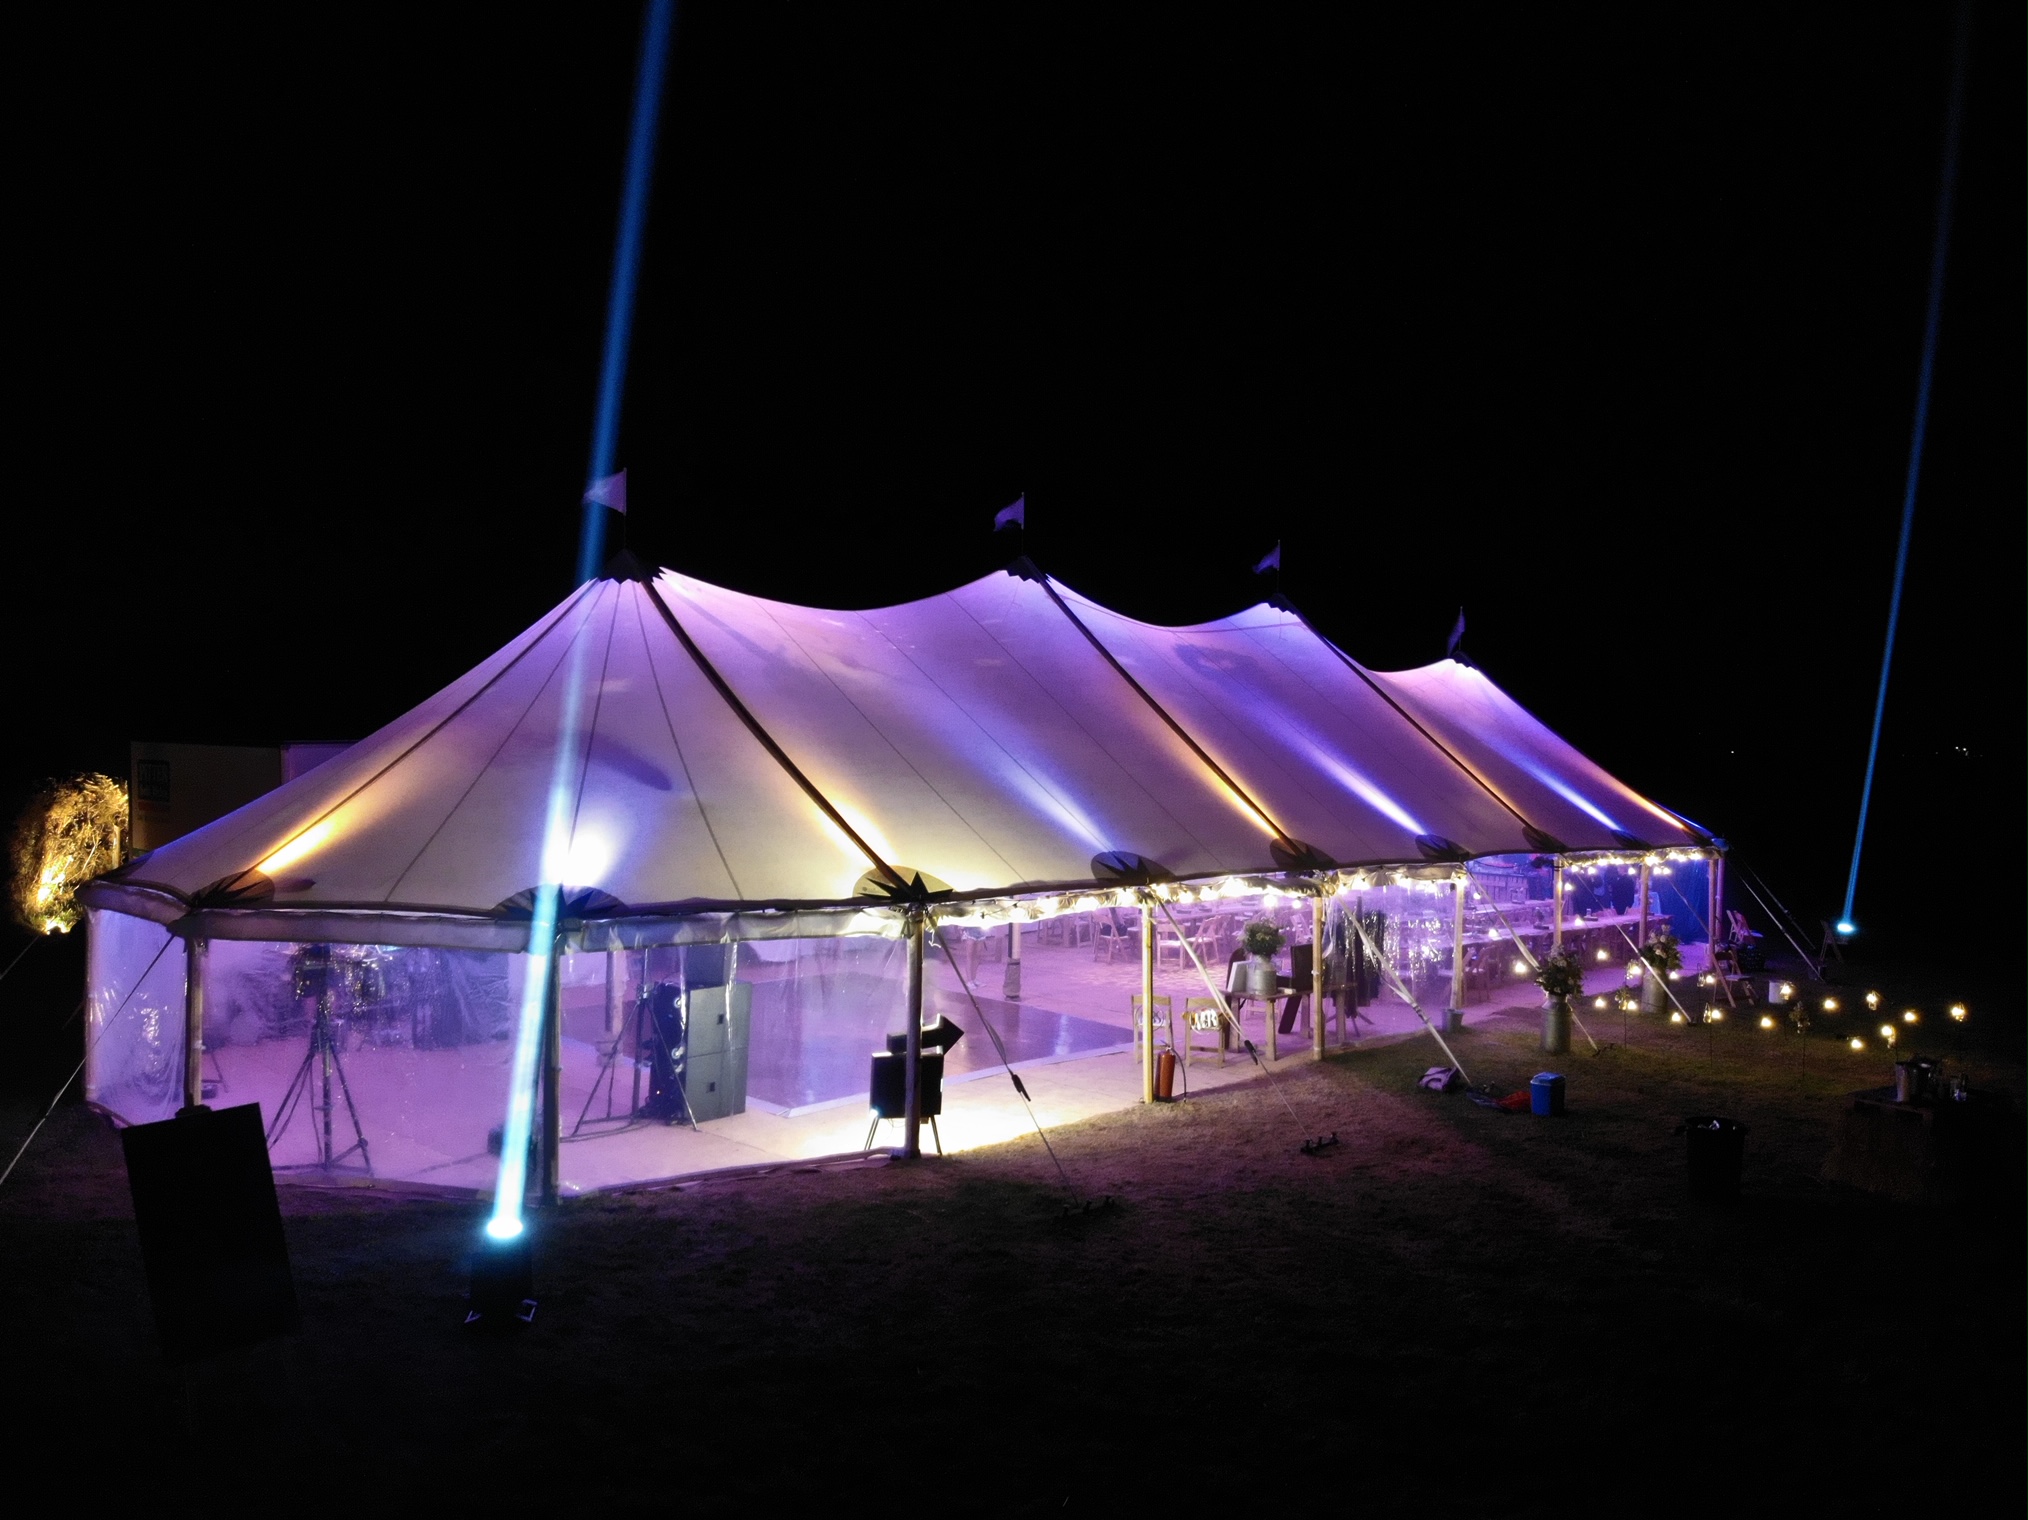 sailcloth tent at night